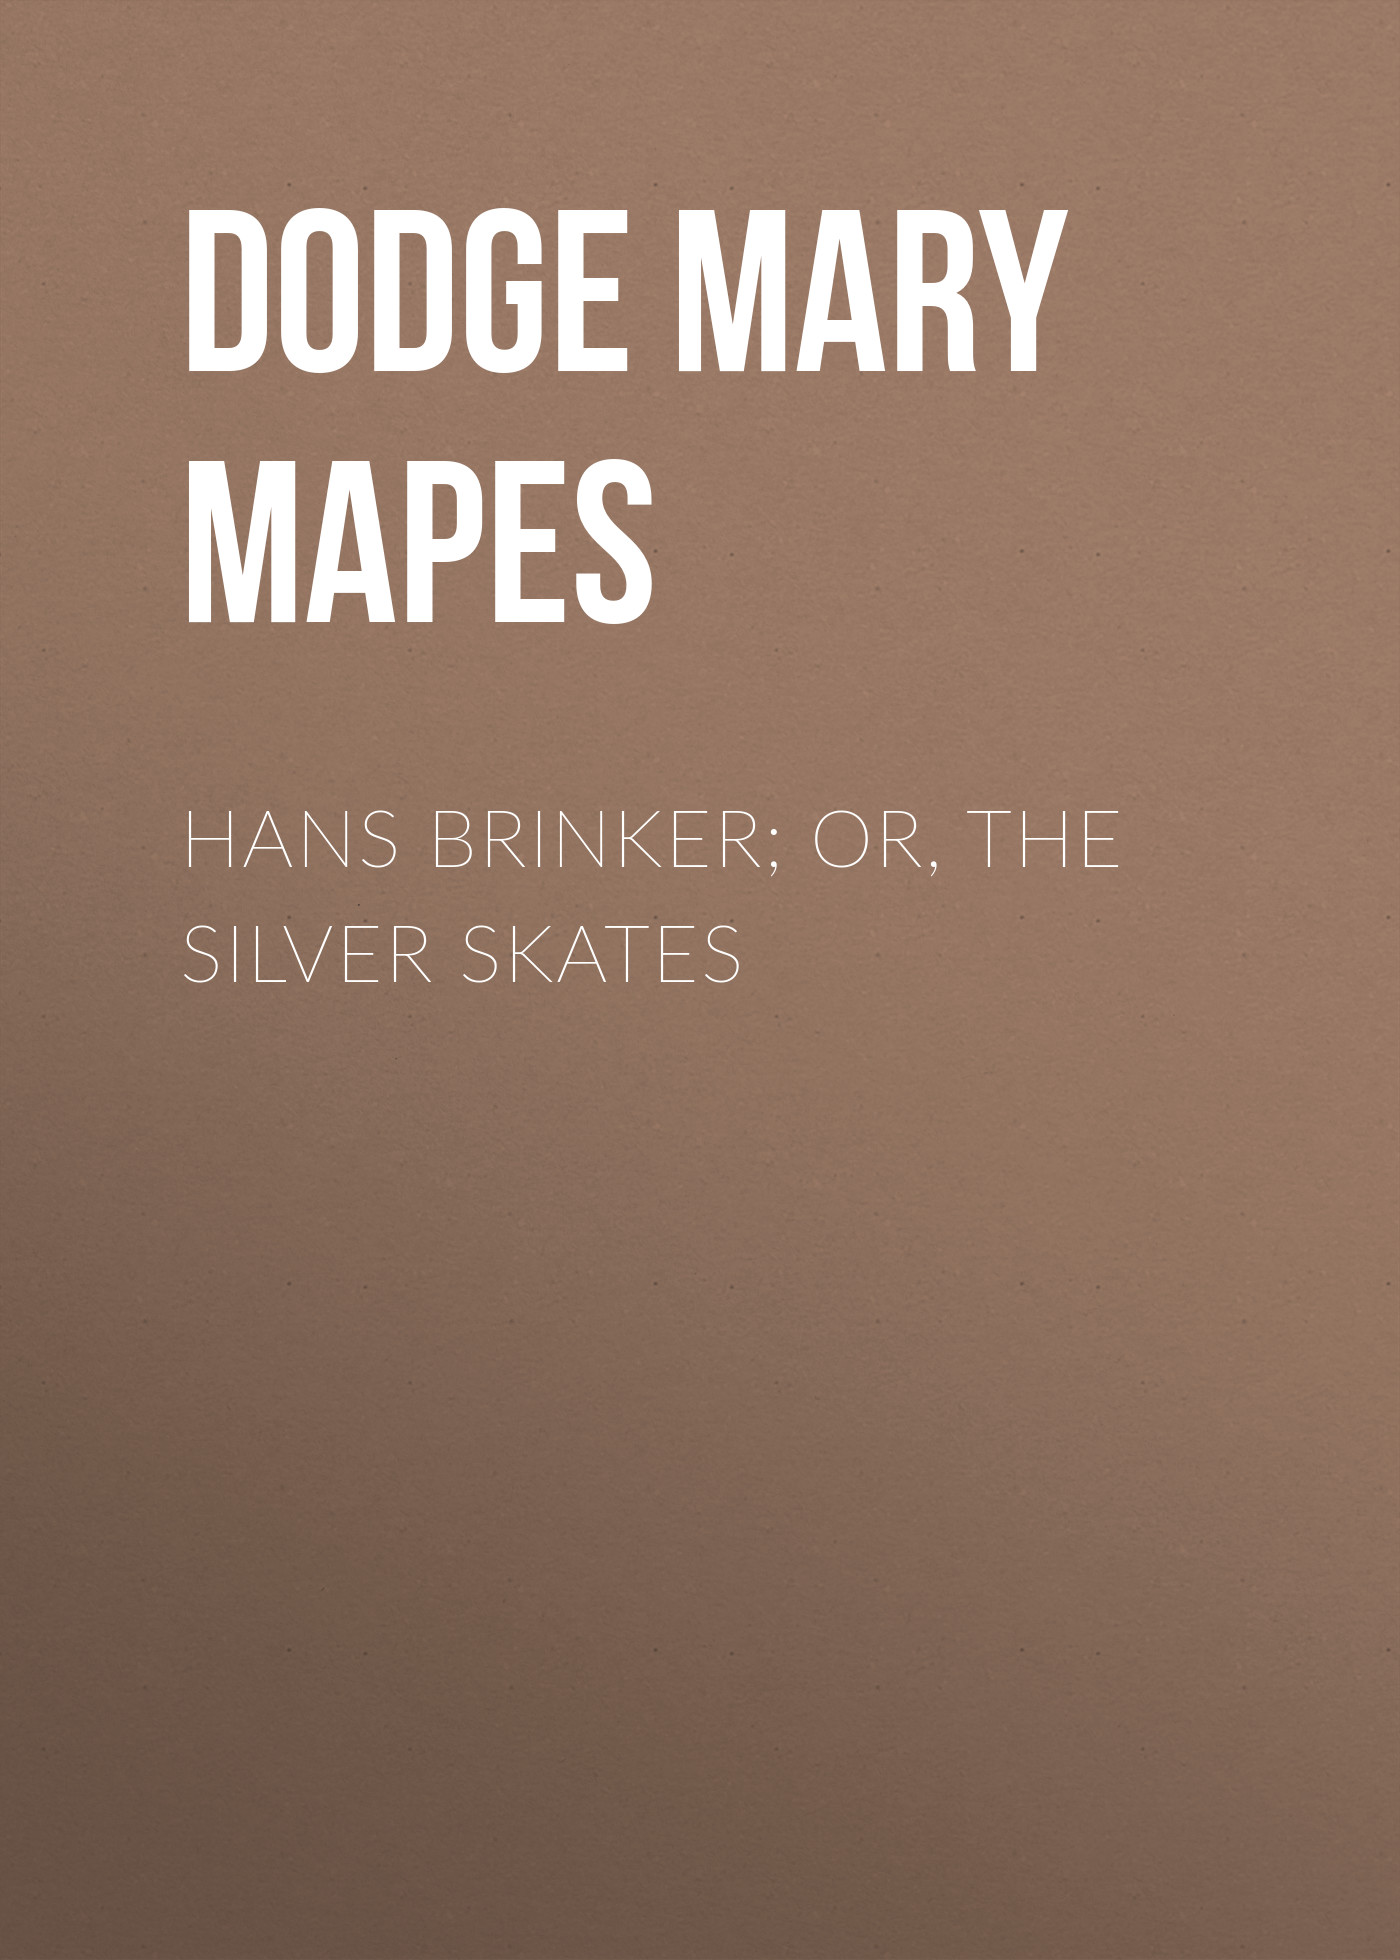 Книга Hans Brinker; Or, The Silver Skates из серии , созданная Mary Dodge, может относится к жанру Зарубежная старинная литература, Зарубежная классика. Стоимость электронной книги Hans Brinker; Or, The Silver Skates с идентификатором 24619357 составляет 0 руб.